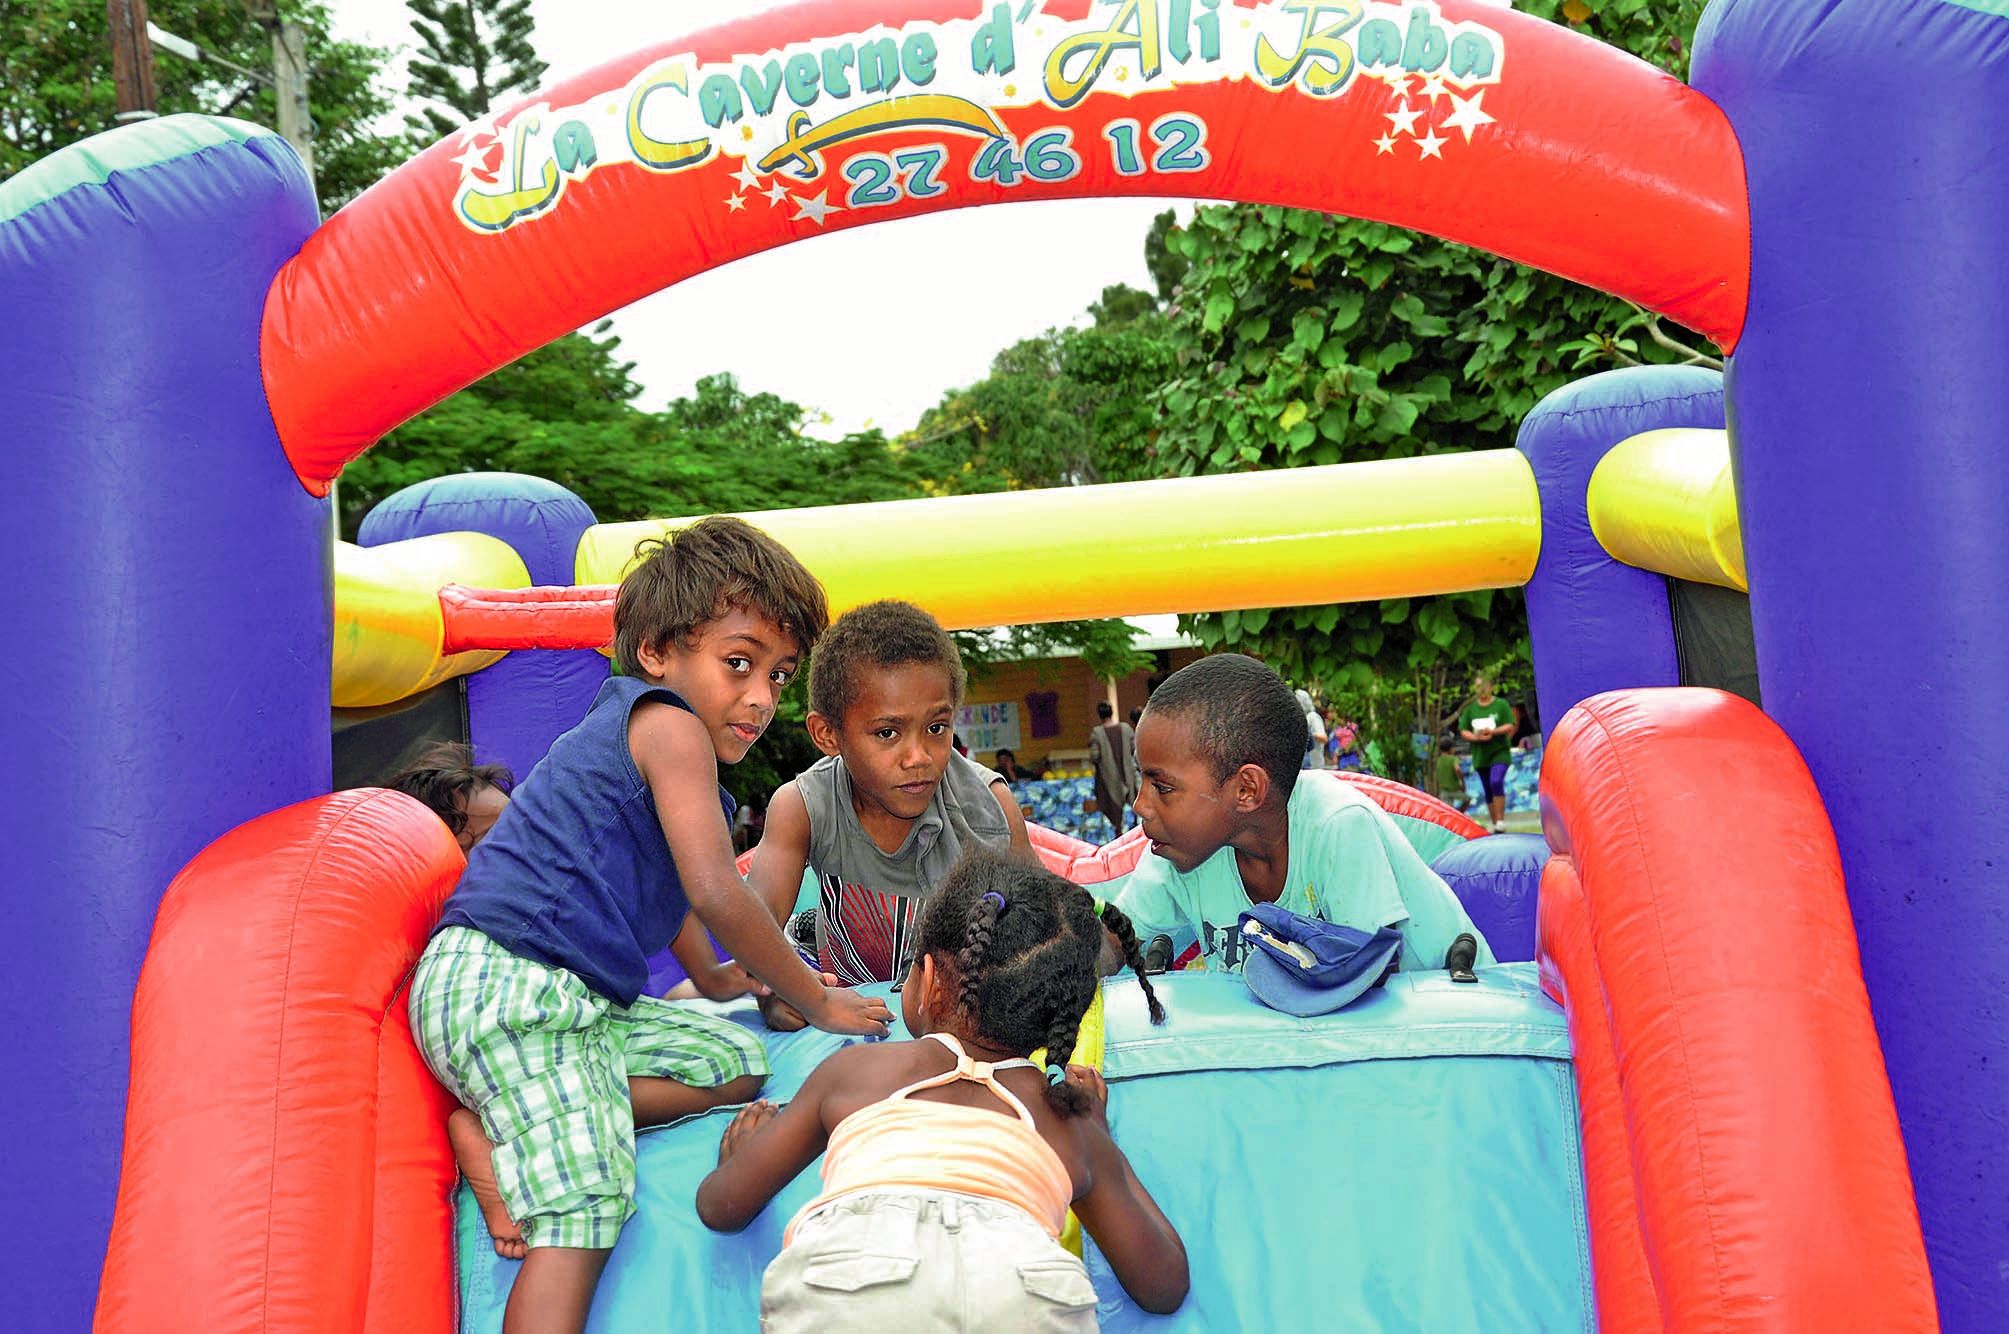 Les enfants s’en sont donné à cœur joie au château gonflable installé dans la cour de l’école.